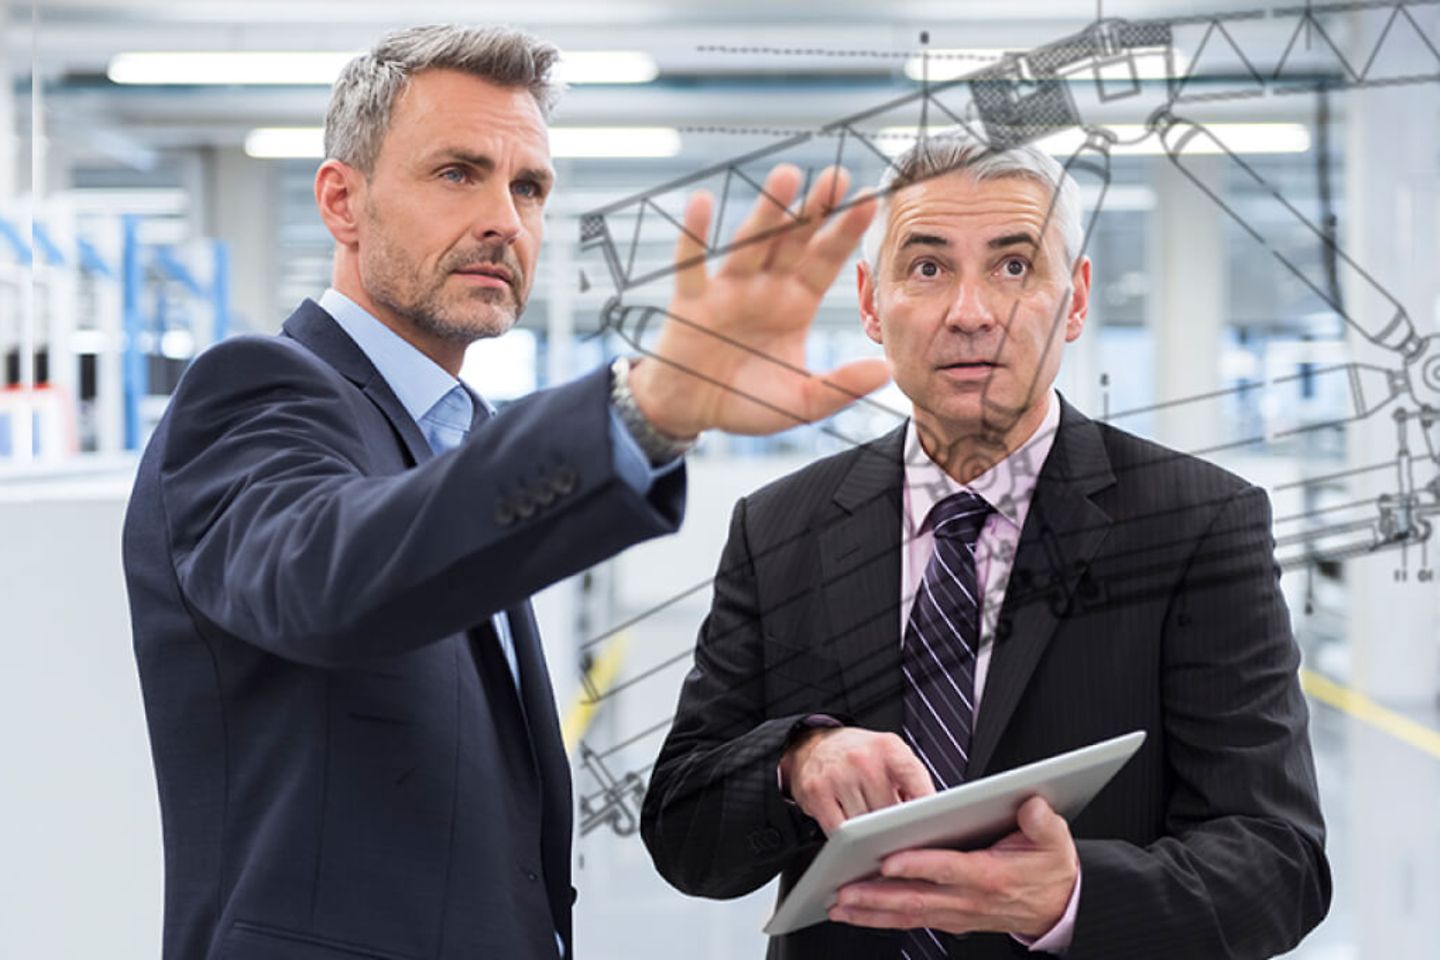 Dois homens de negócios em uma fábrica olhando para um gráfico projetado em um painel de vidro